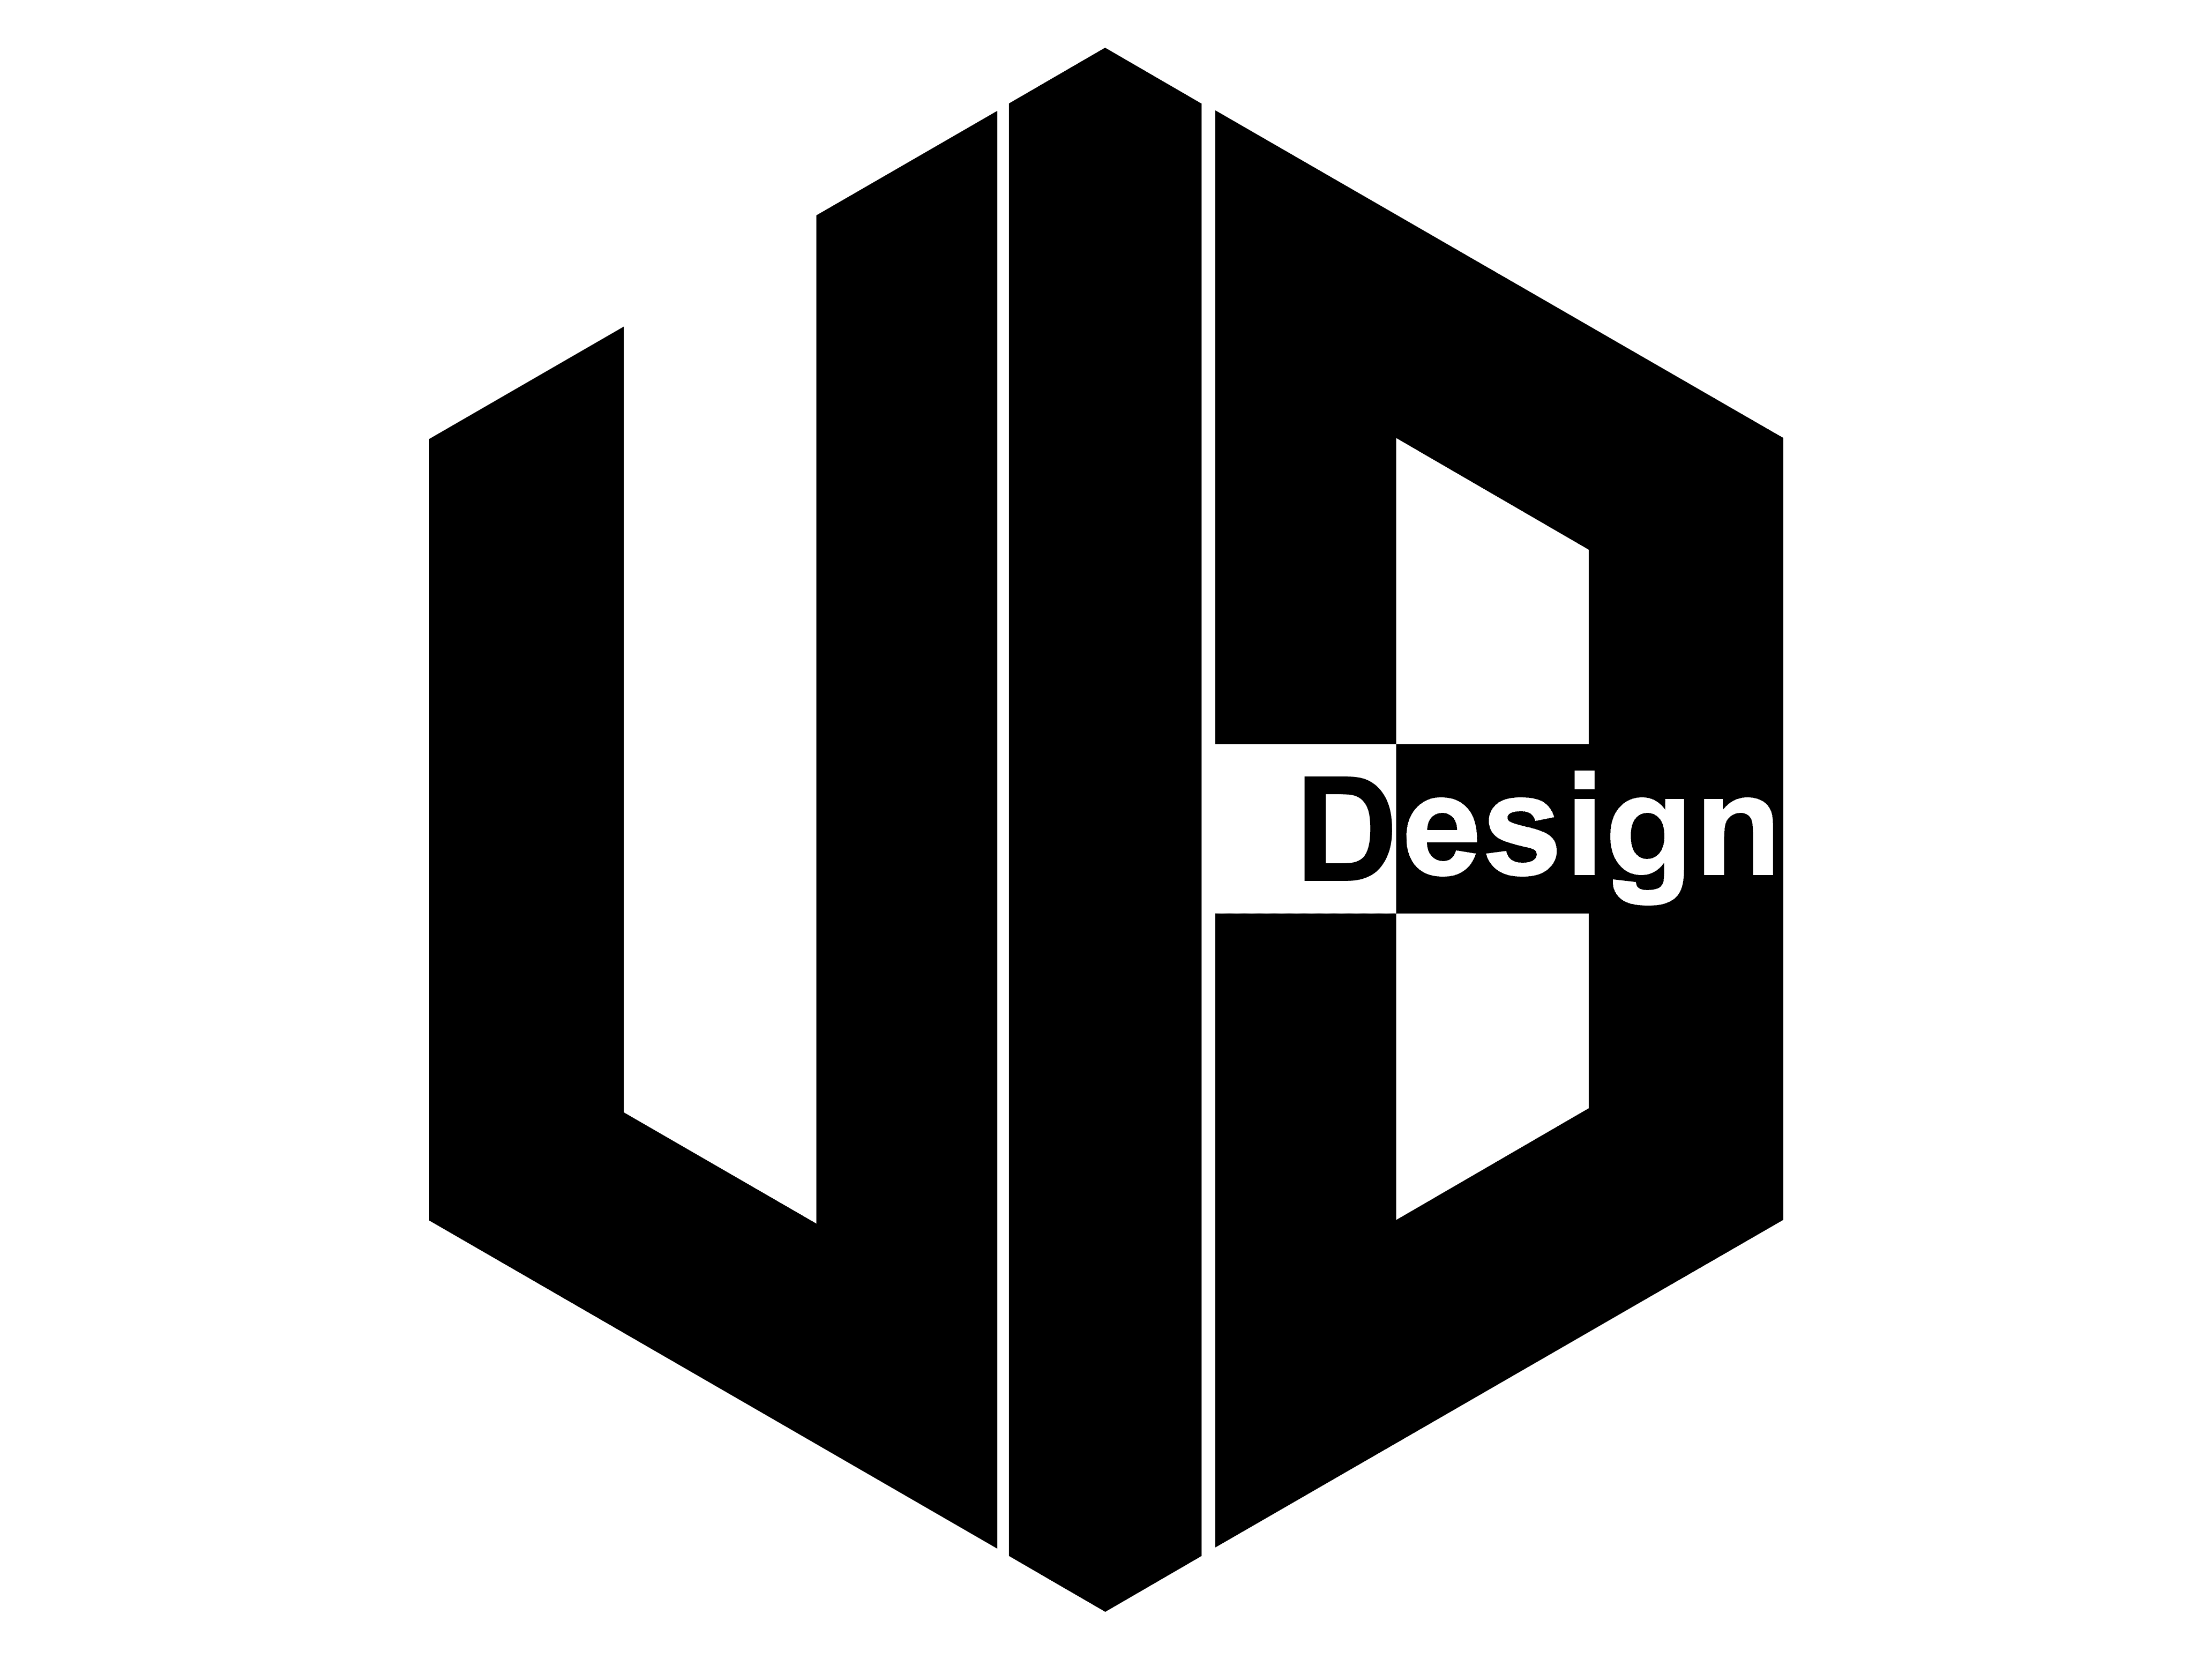 Vi3 Design